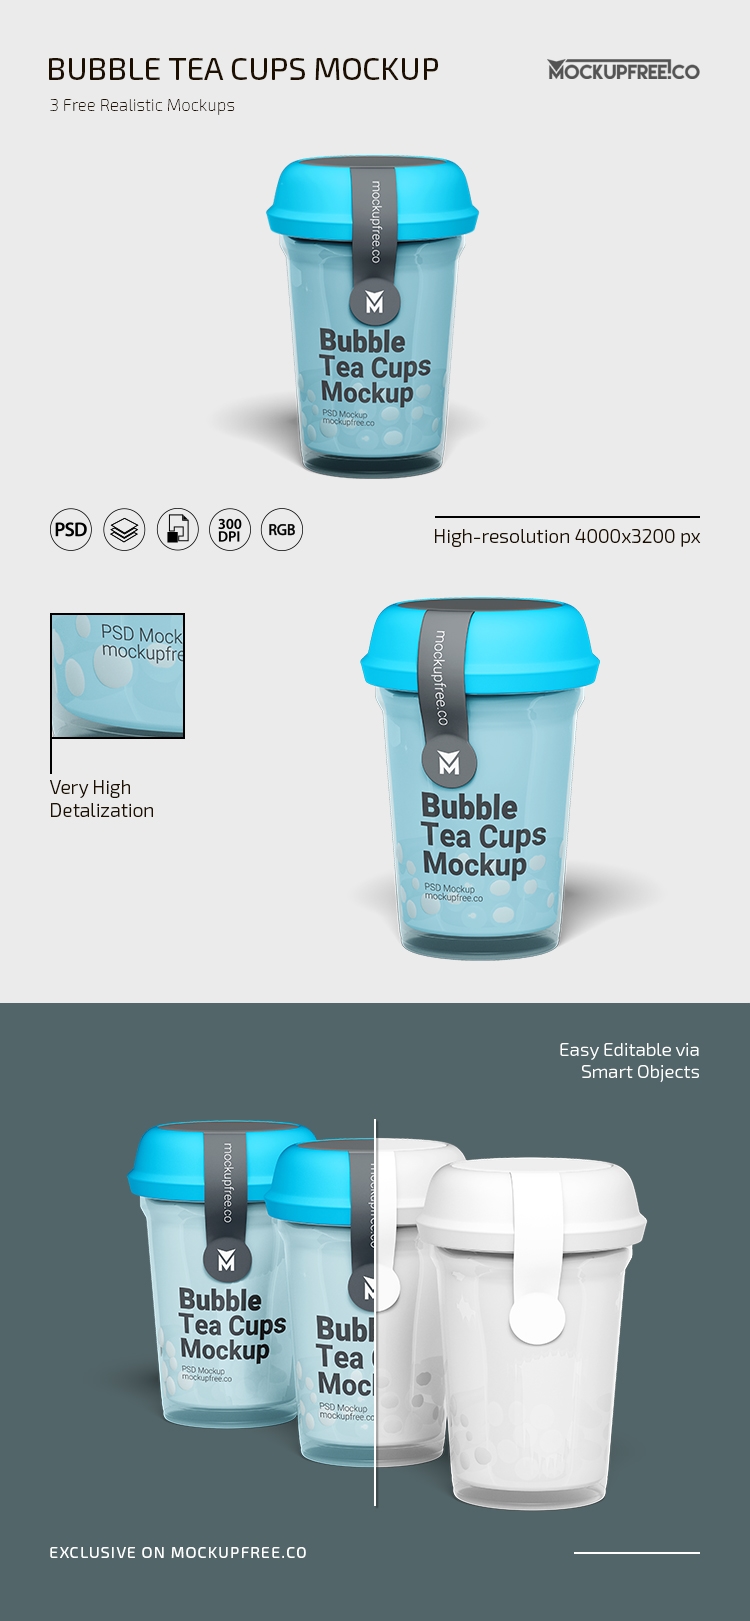 https://resourceboy.com/wp-content/uploads/2022/07/3-standing-bubble-tea-cup-mockups-in-various-shots.jpg